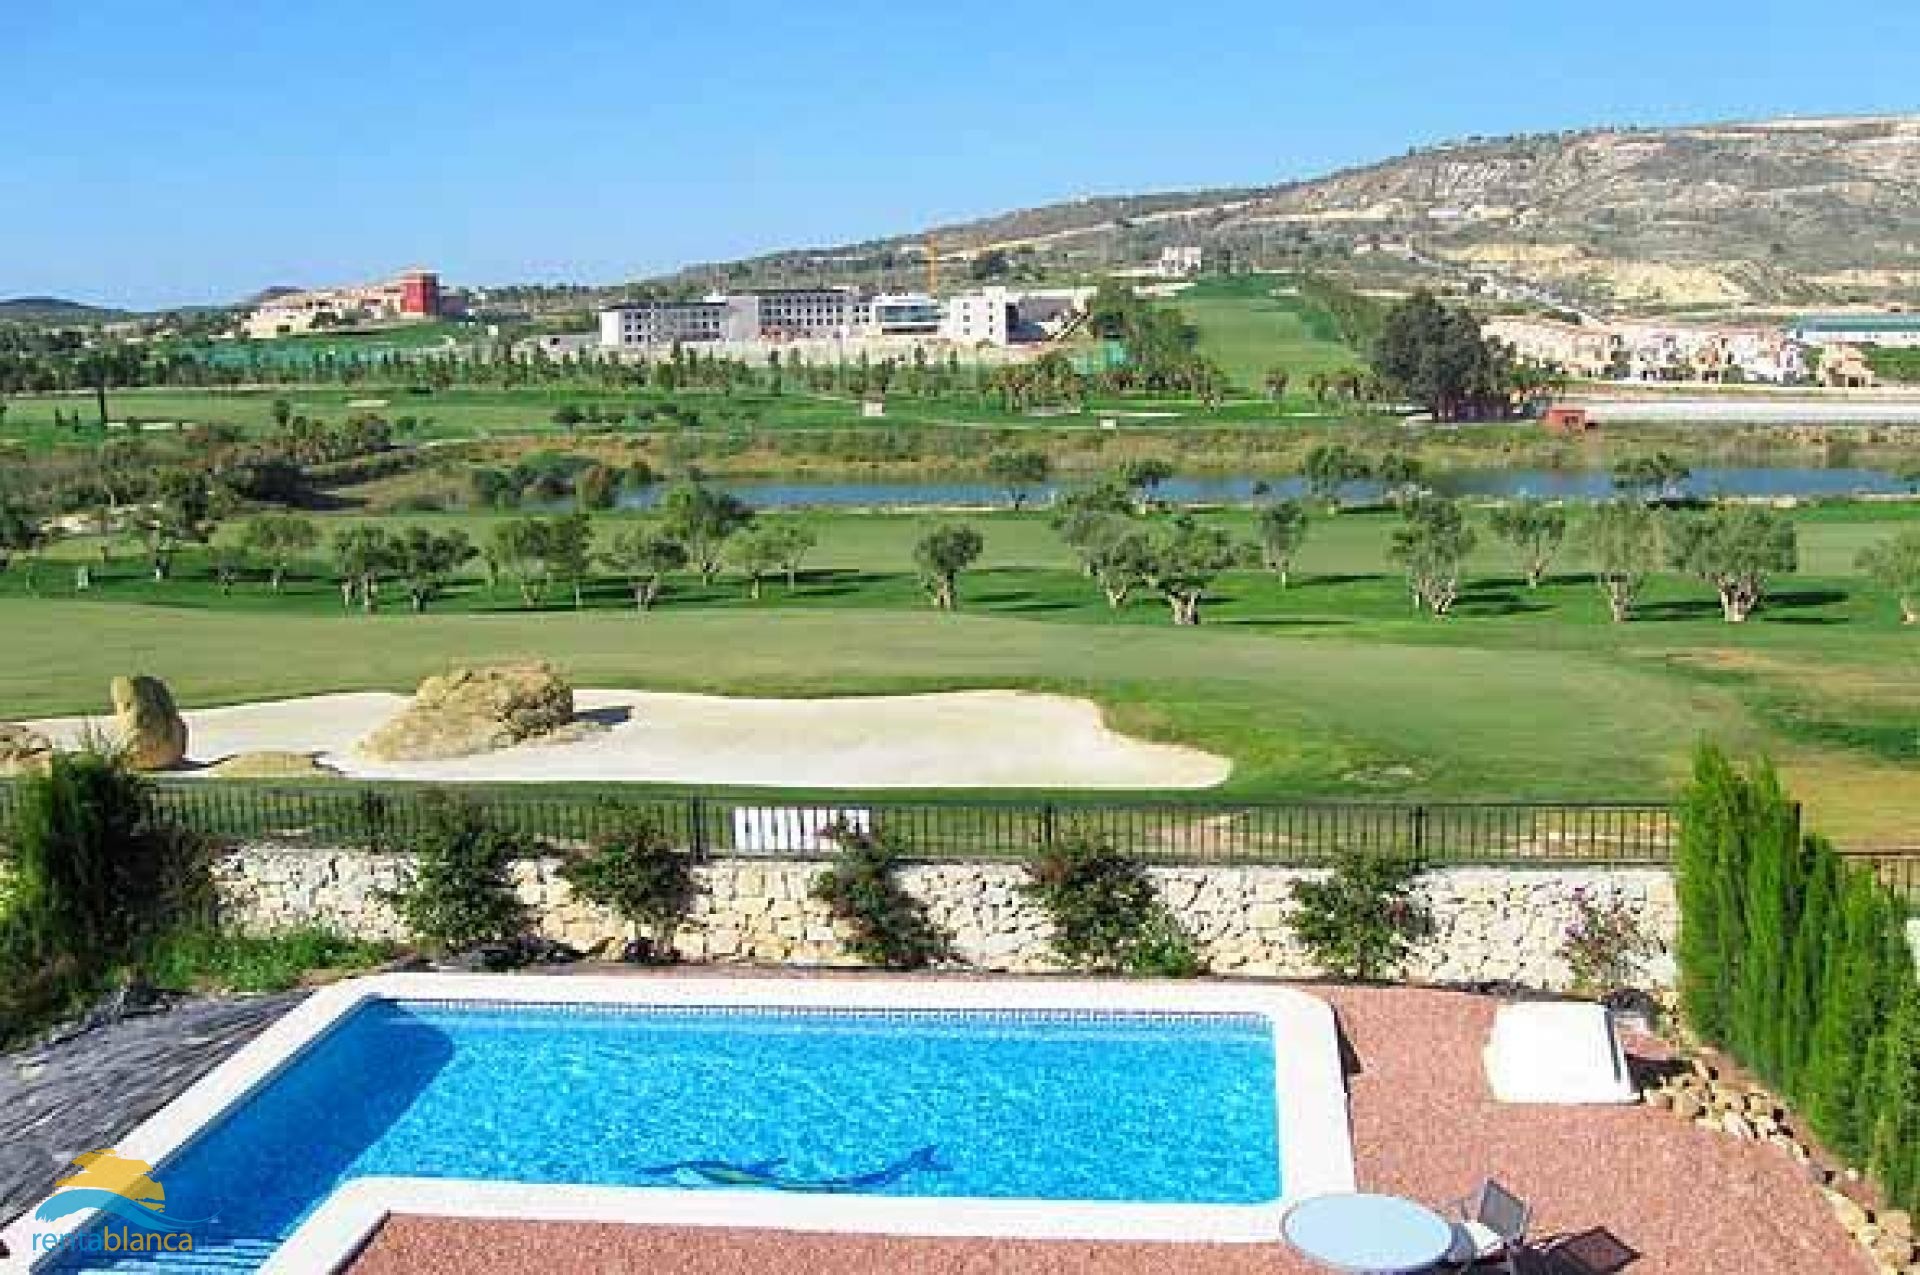 Villa golfbaan La Finca - Algorfa - Rentablanca